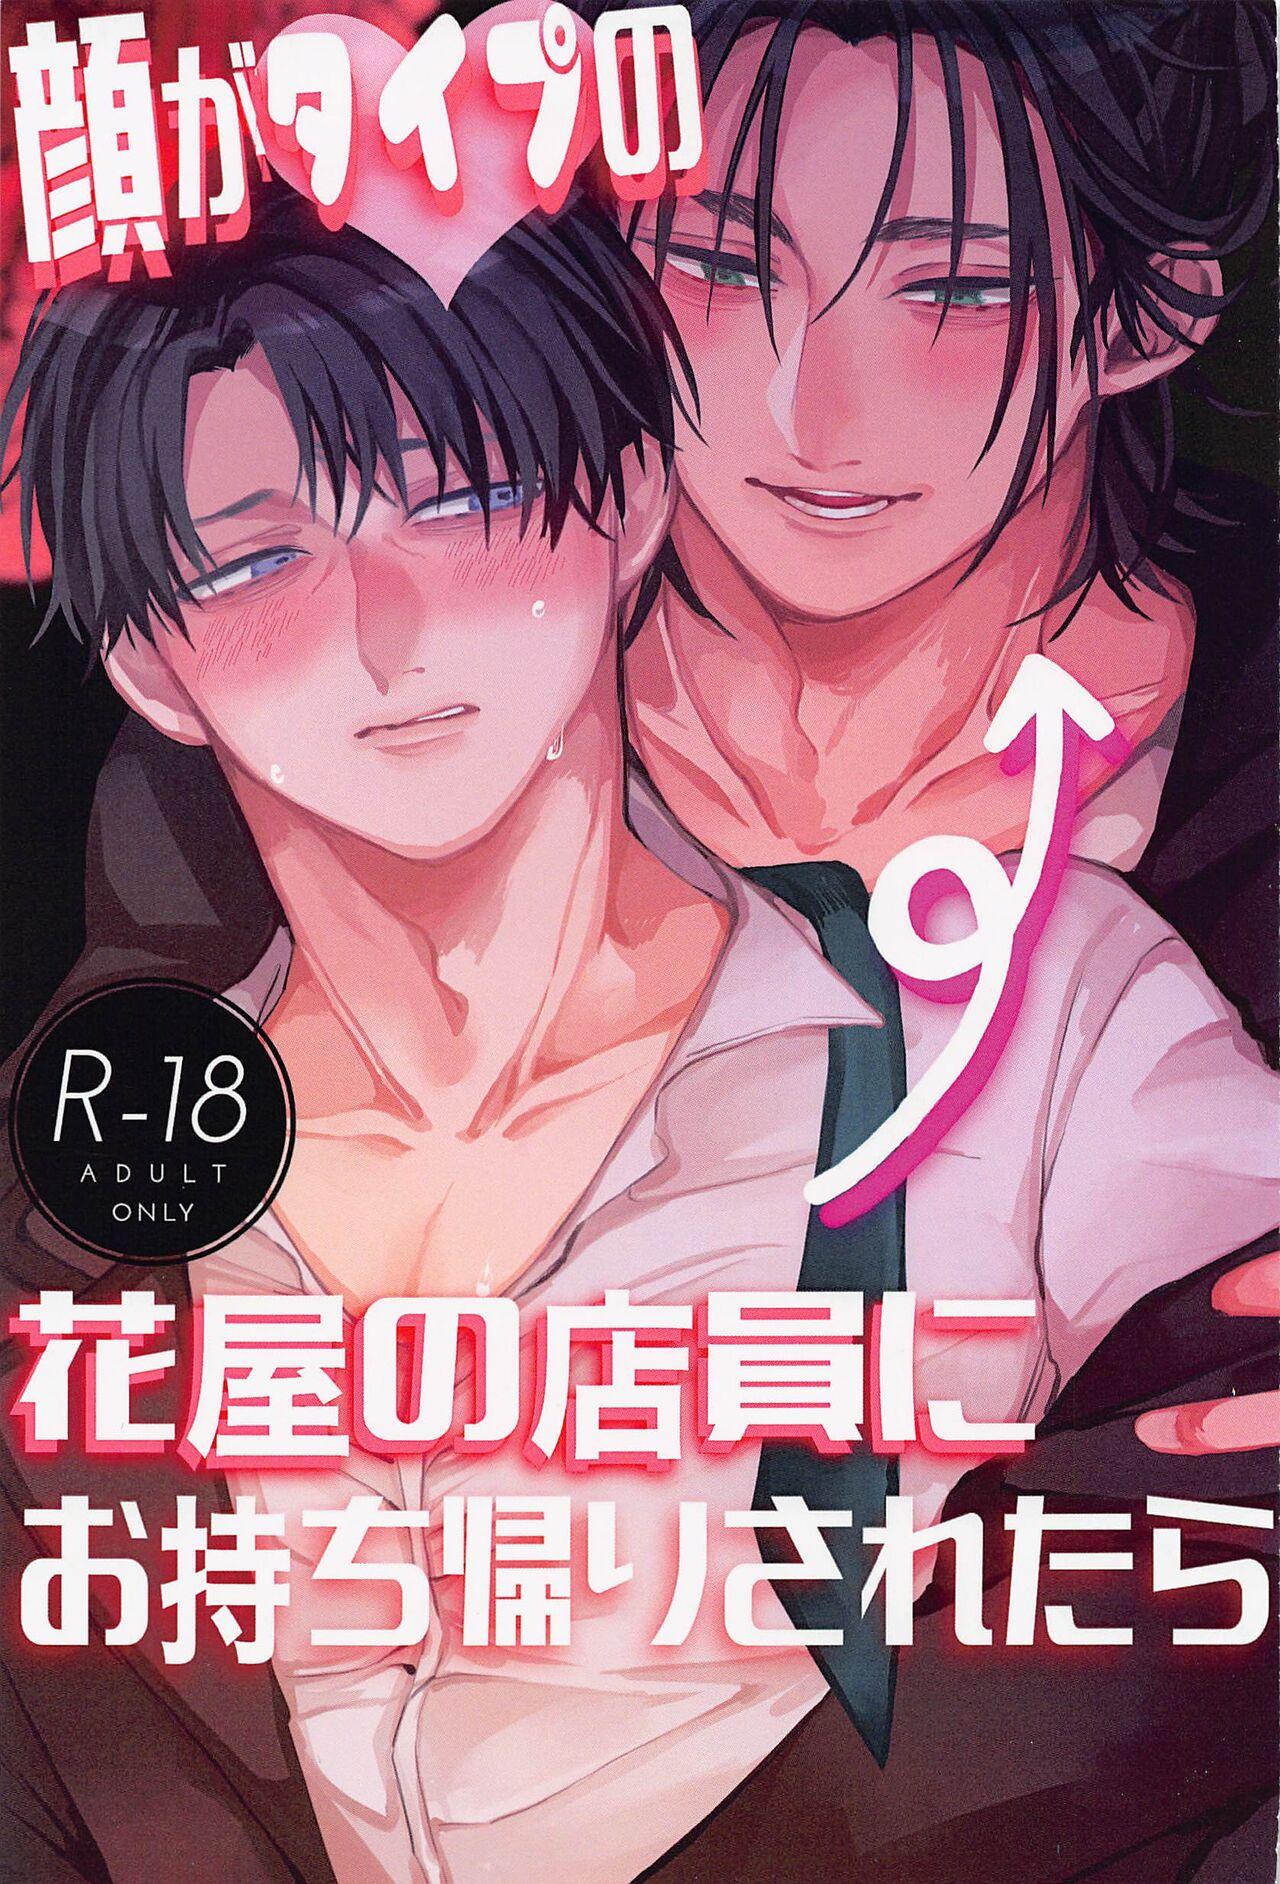 Teenage Porn Kao ga Type no Hanaya no no Tenin ni Omochikaeri Saretara - Shingeki no kyojin | attack on titan Gay Porn - Page 1